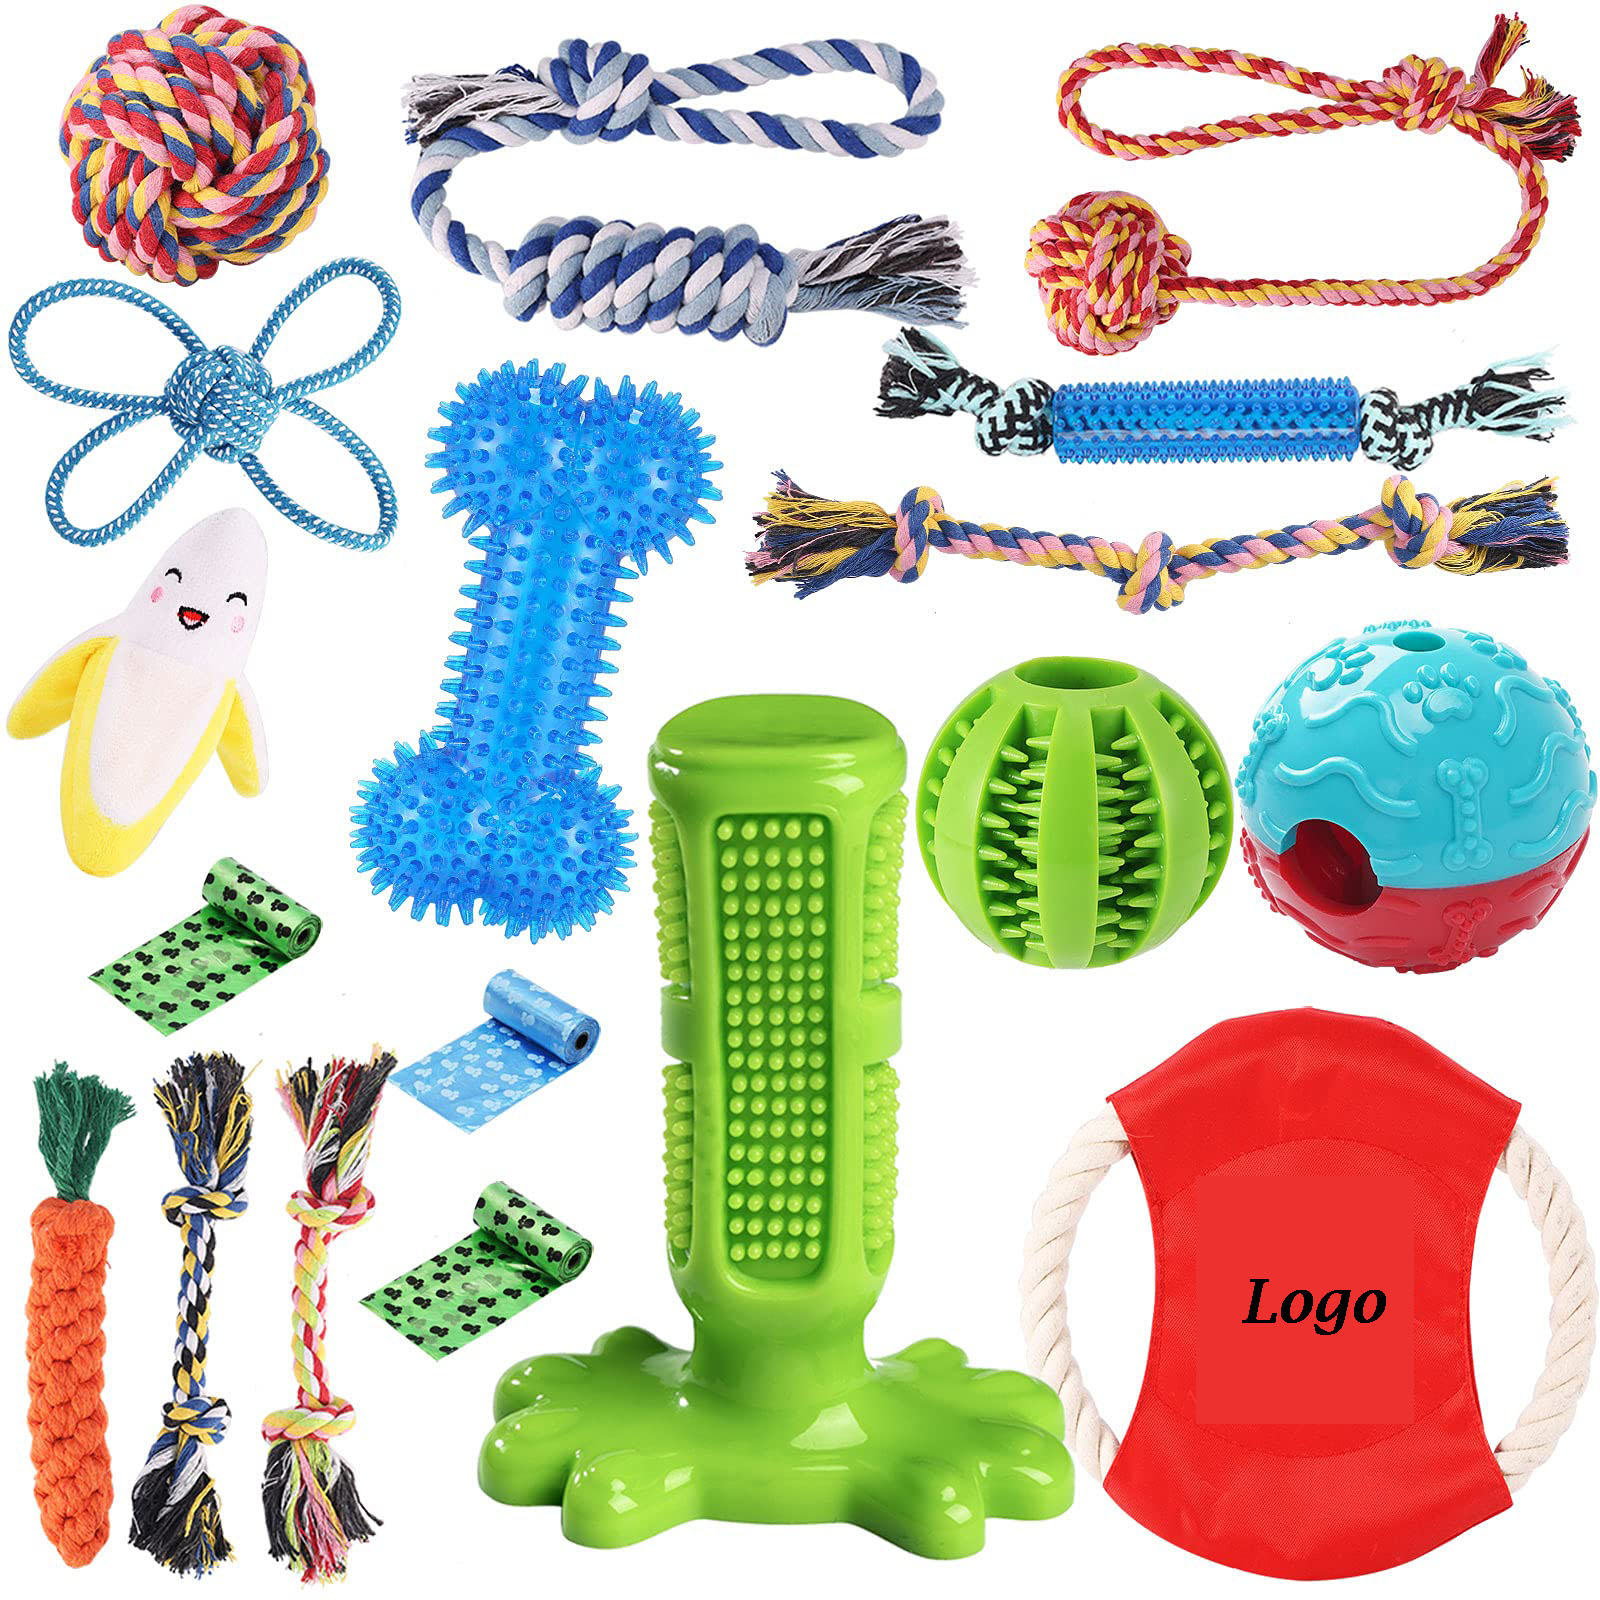 18 កញ្ចប់ Dog Chew Toys Kit for Puppy